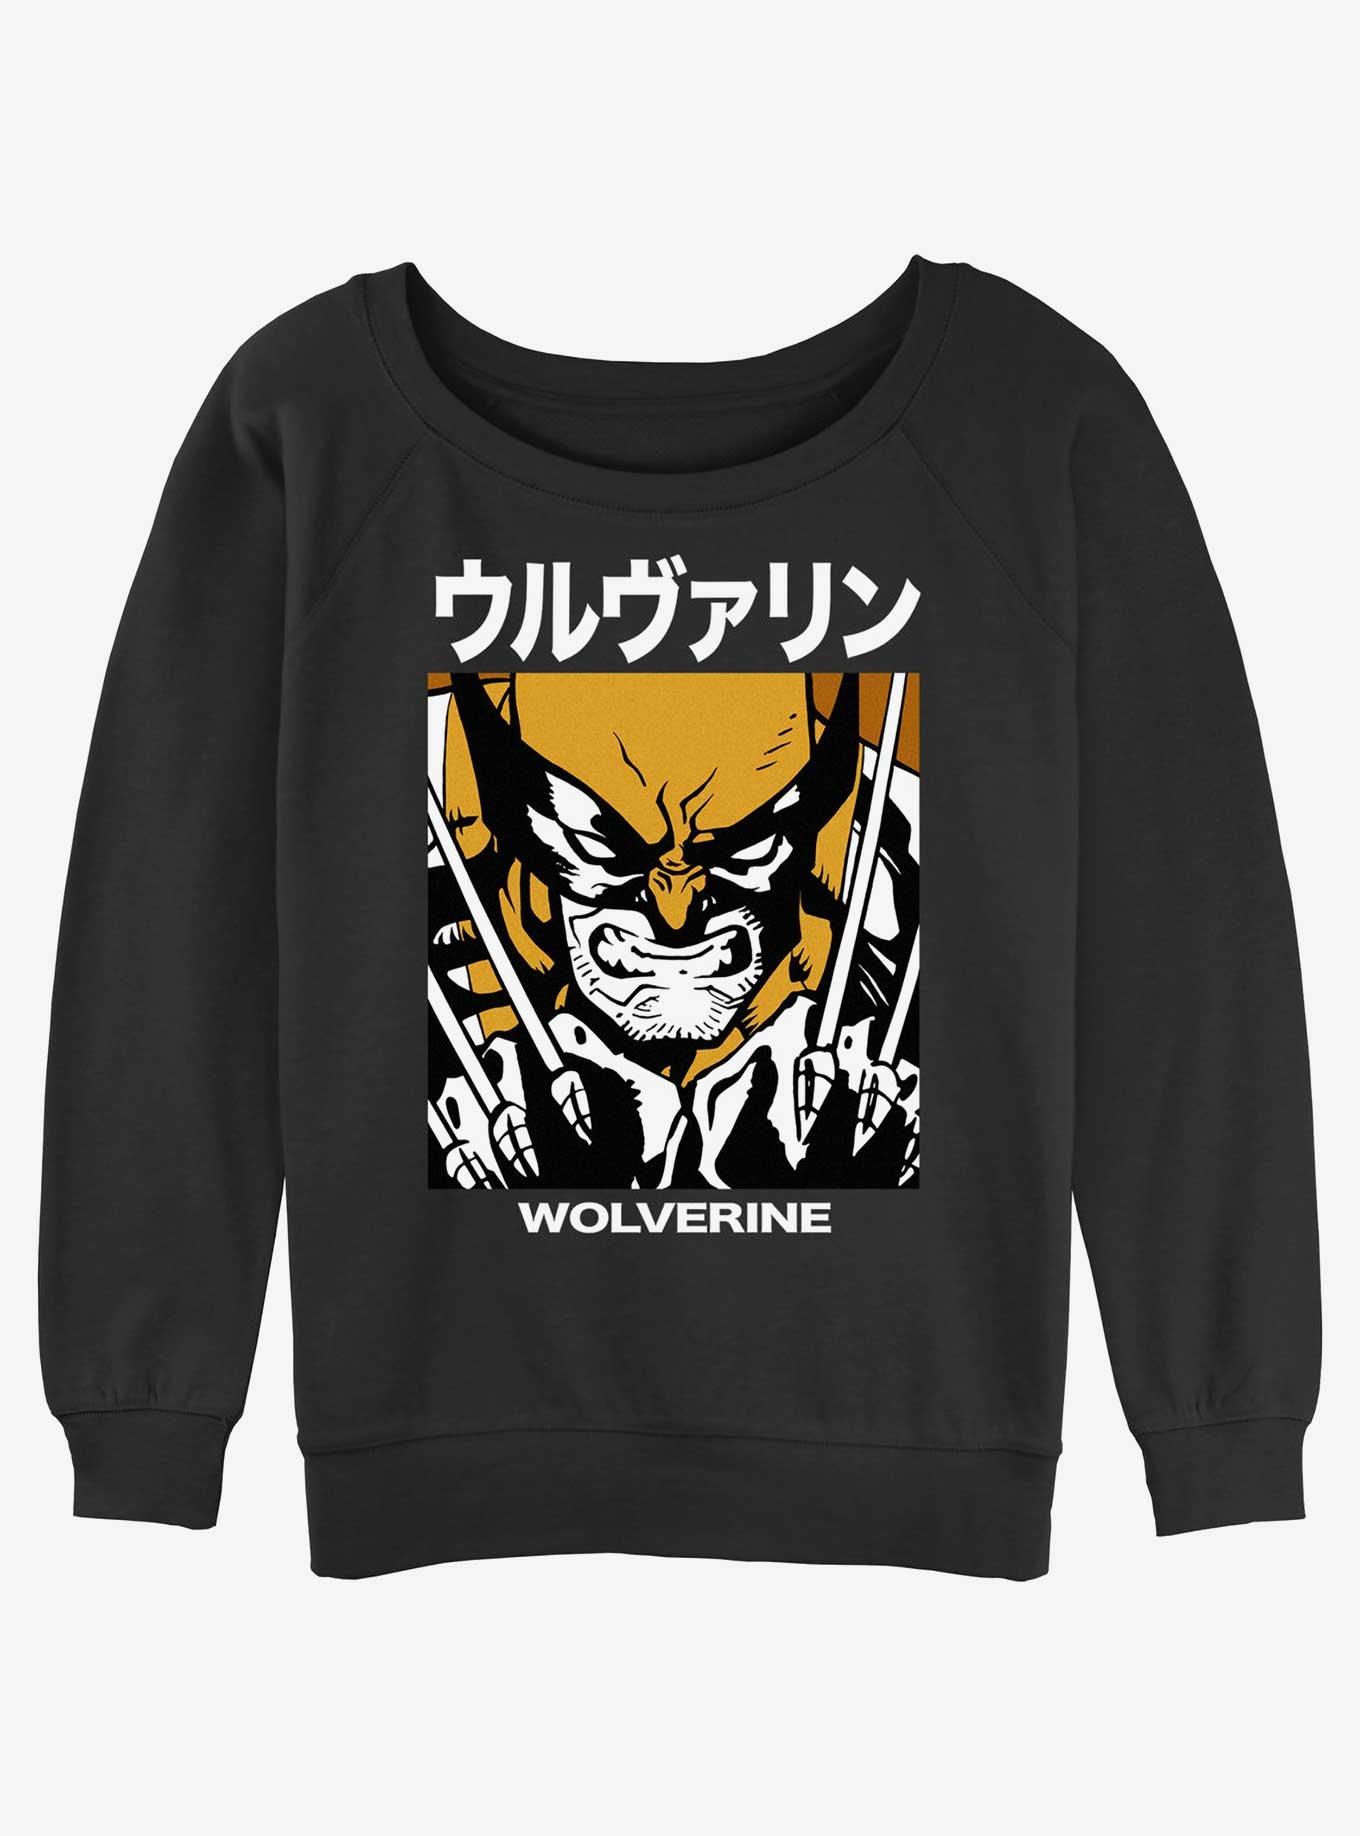 Wolverine Kanji Rage Girls Slouchy Sweatshirt, BLACK, hi-res